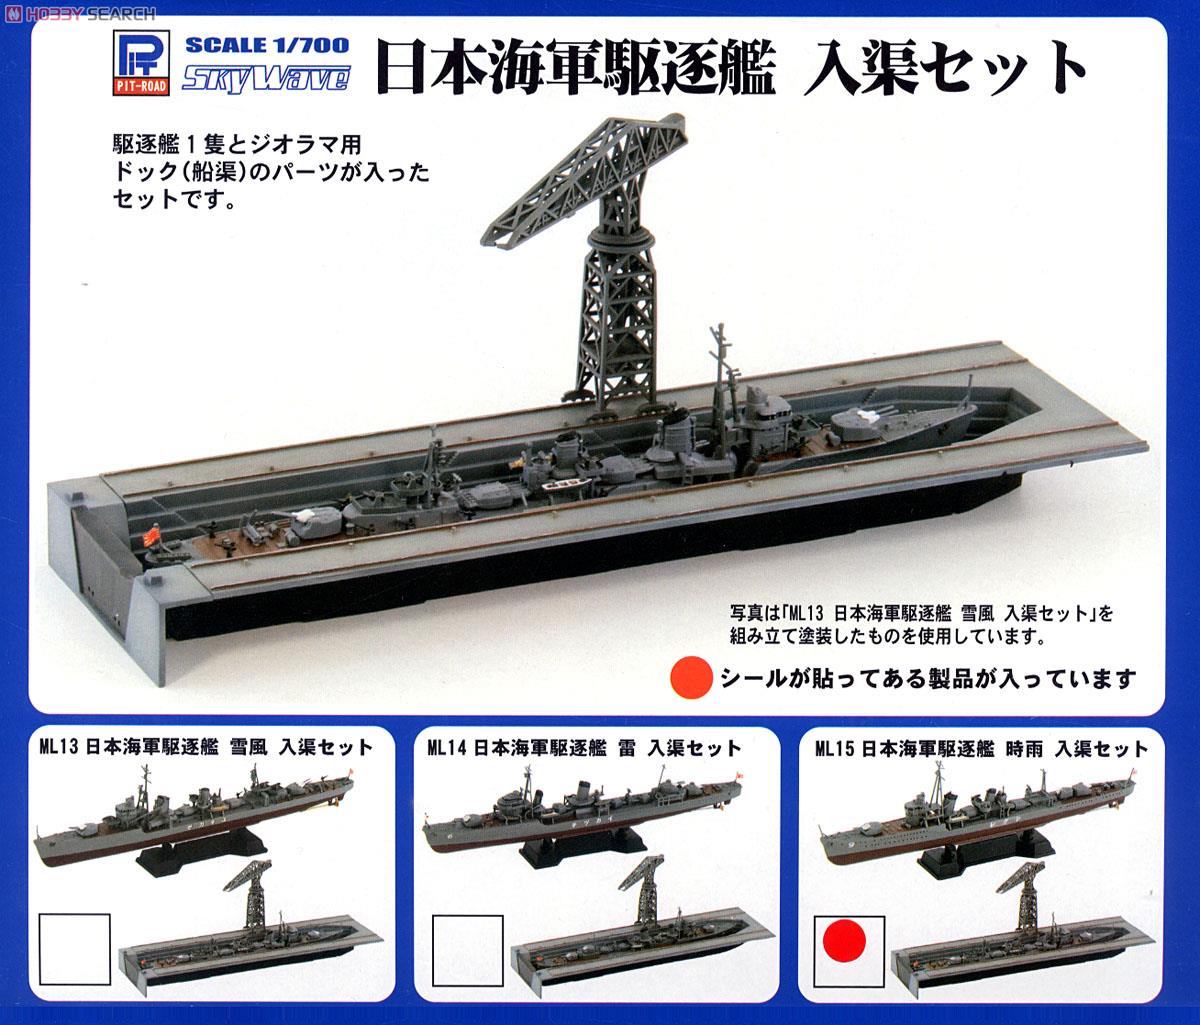 日本海軍 白露型駆逐艦 時雨 入渠セット (プラモデル) パッケージ1